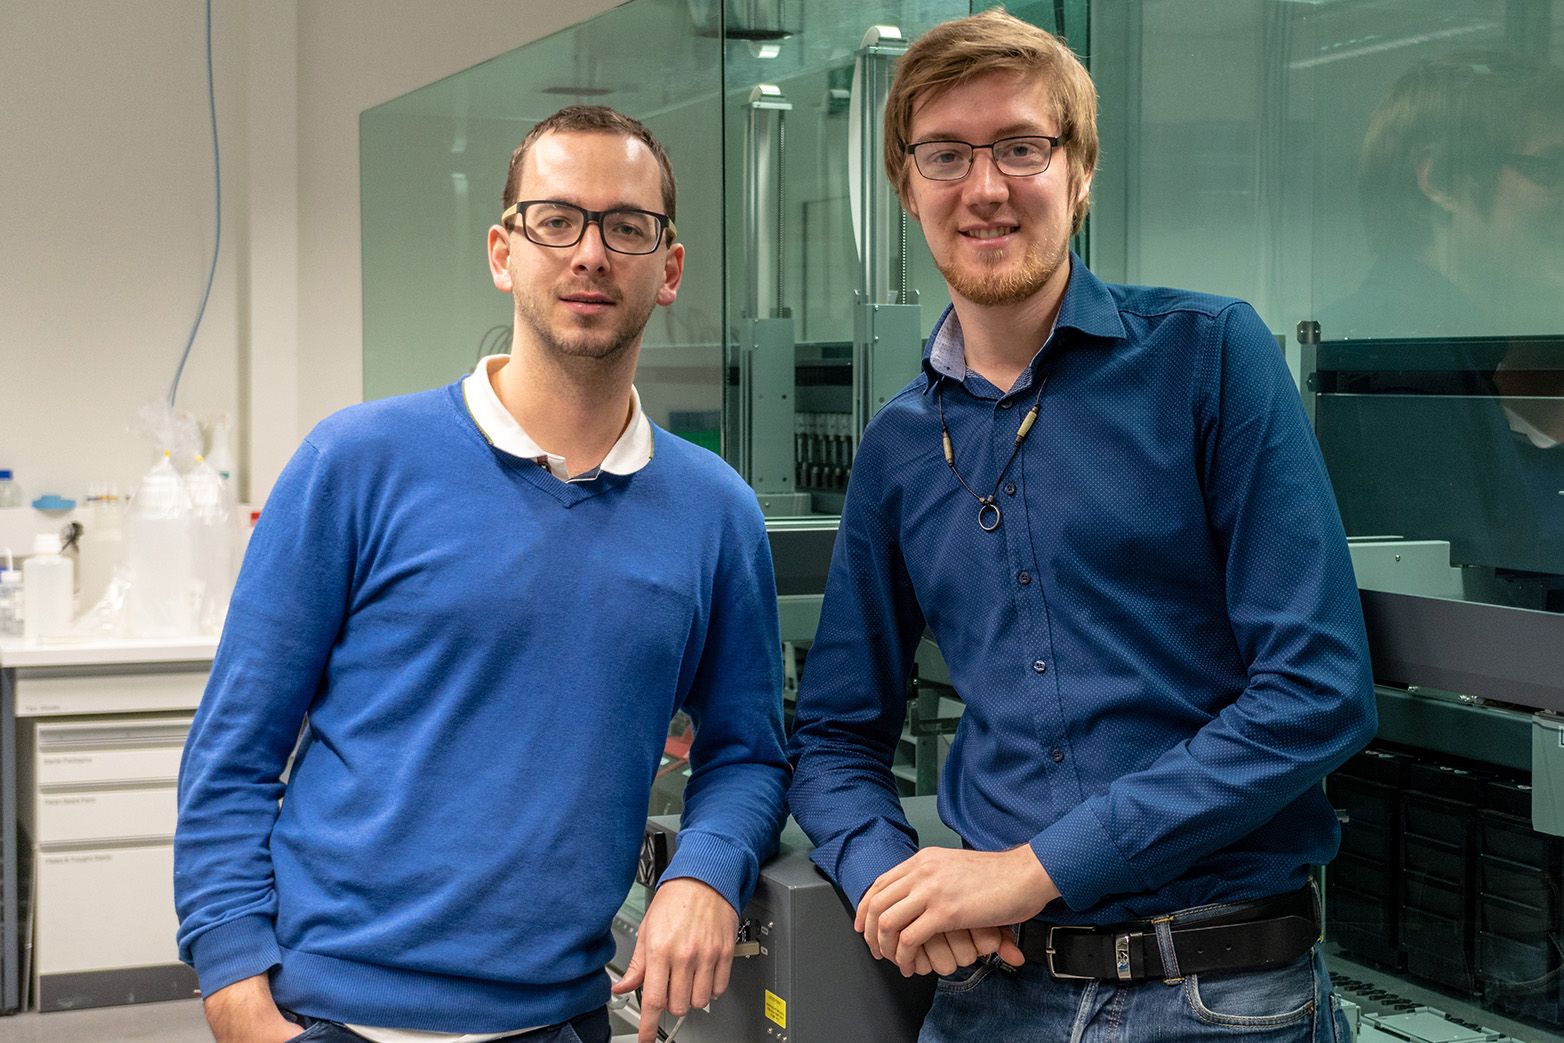 Oskari Vinko (r.) und Maximilian Schulz (l.) wollen mit ihrem Unternehmen die Laborautomation vorantreiben. (Bild: Andrea Schmits/ETH Zürich)